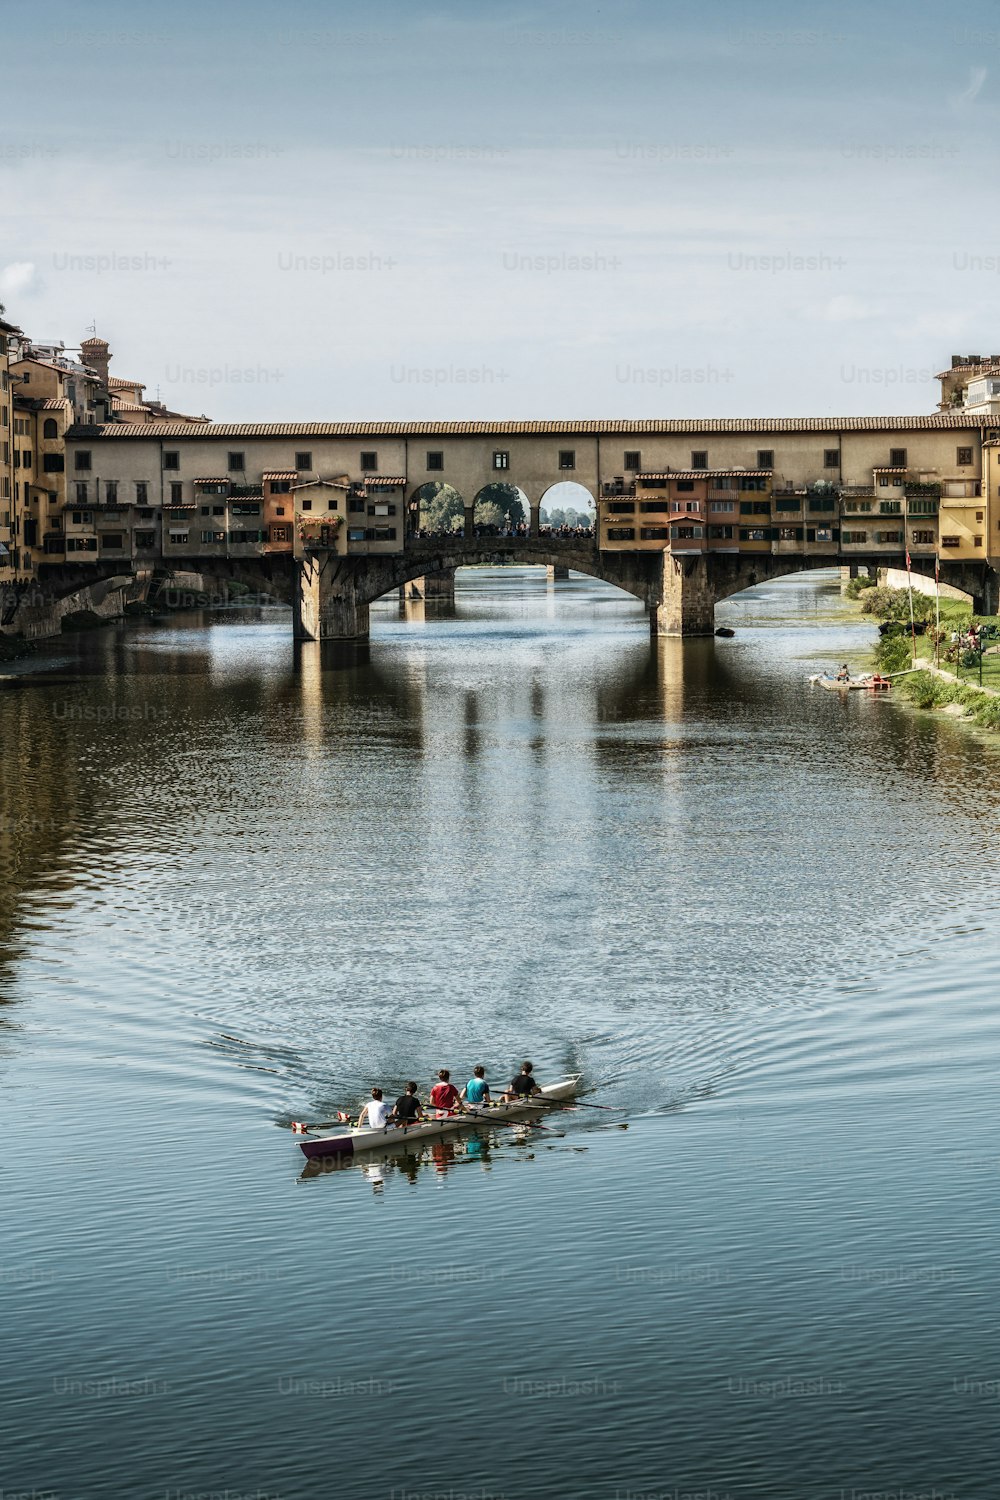 Florence Ponte Vecchio Bridge et City Skyline en Italie. Florence est la capitale de la région de Toscane, dans le centre de l’Italie. Florence était le centre du commerce médiéval de l’Italie et des villes les plus riches de l’époque passée.